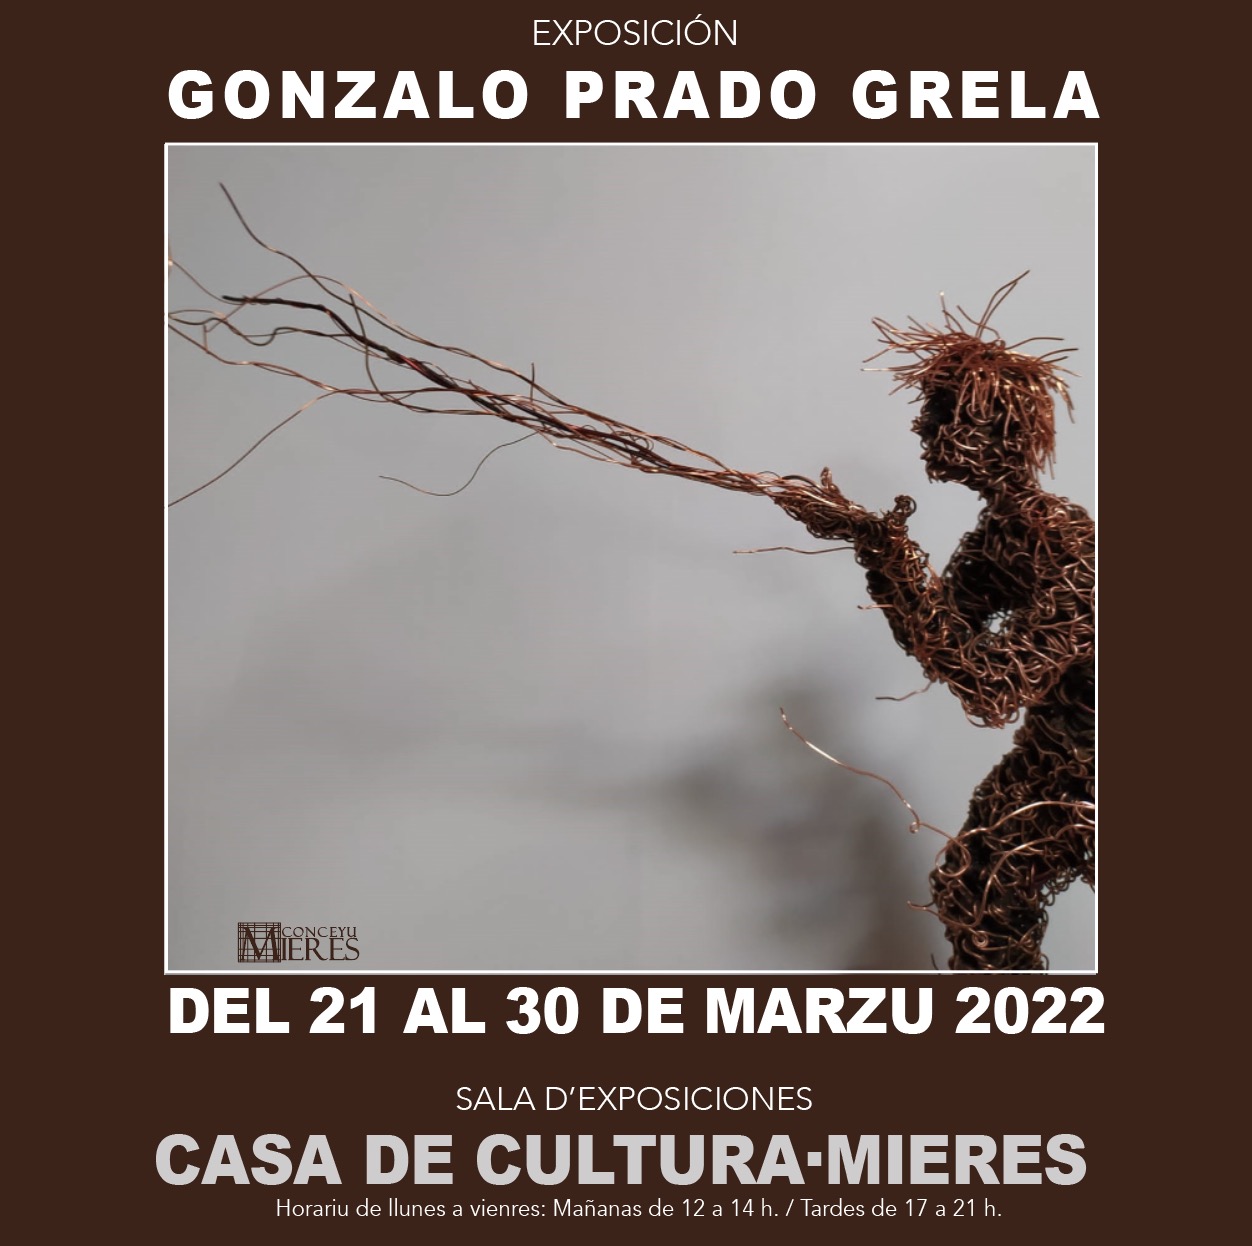 Gonzalo Prado Grela Expo Mieres Marzo 2022